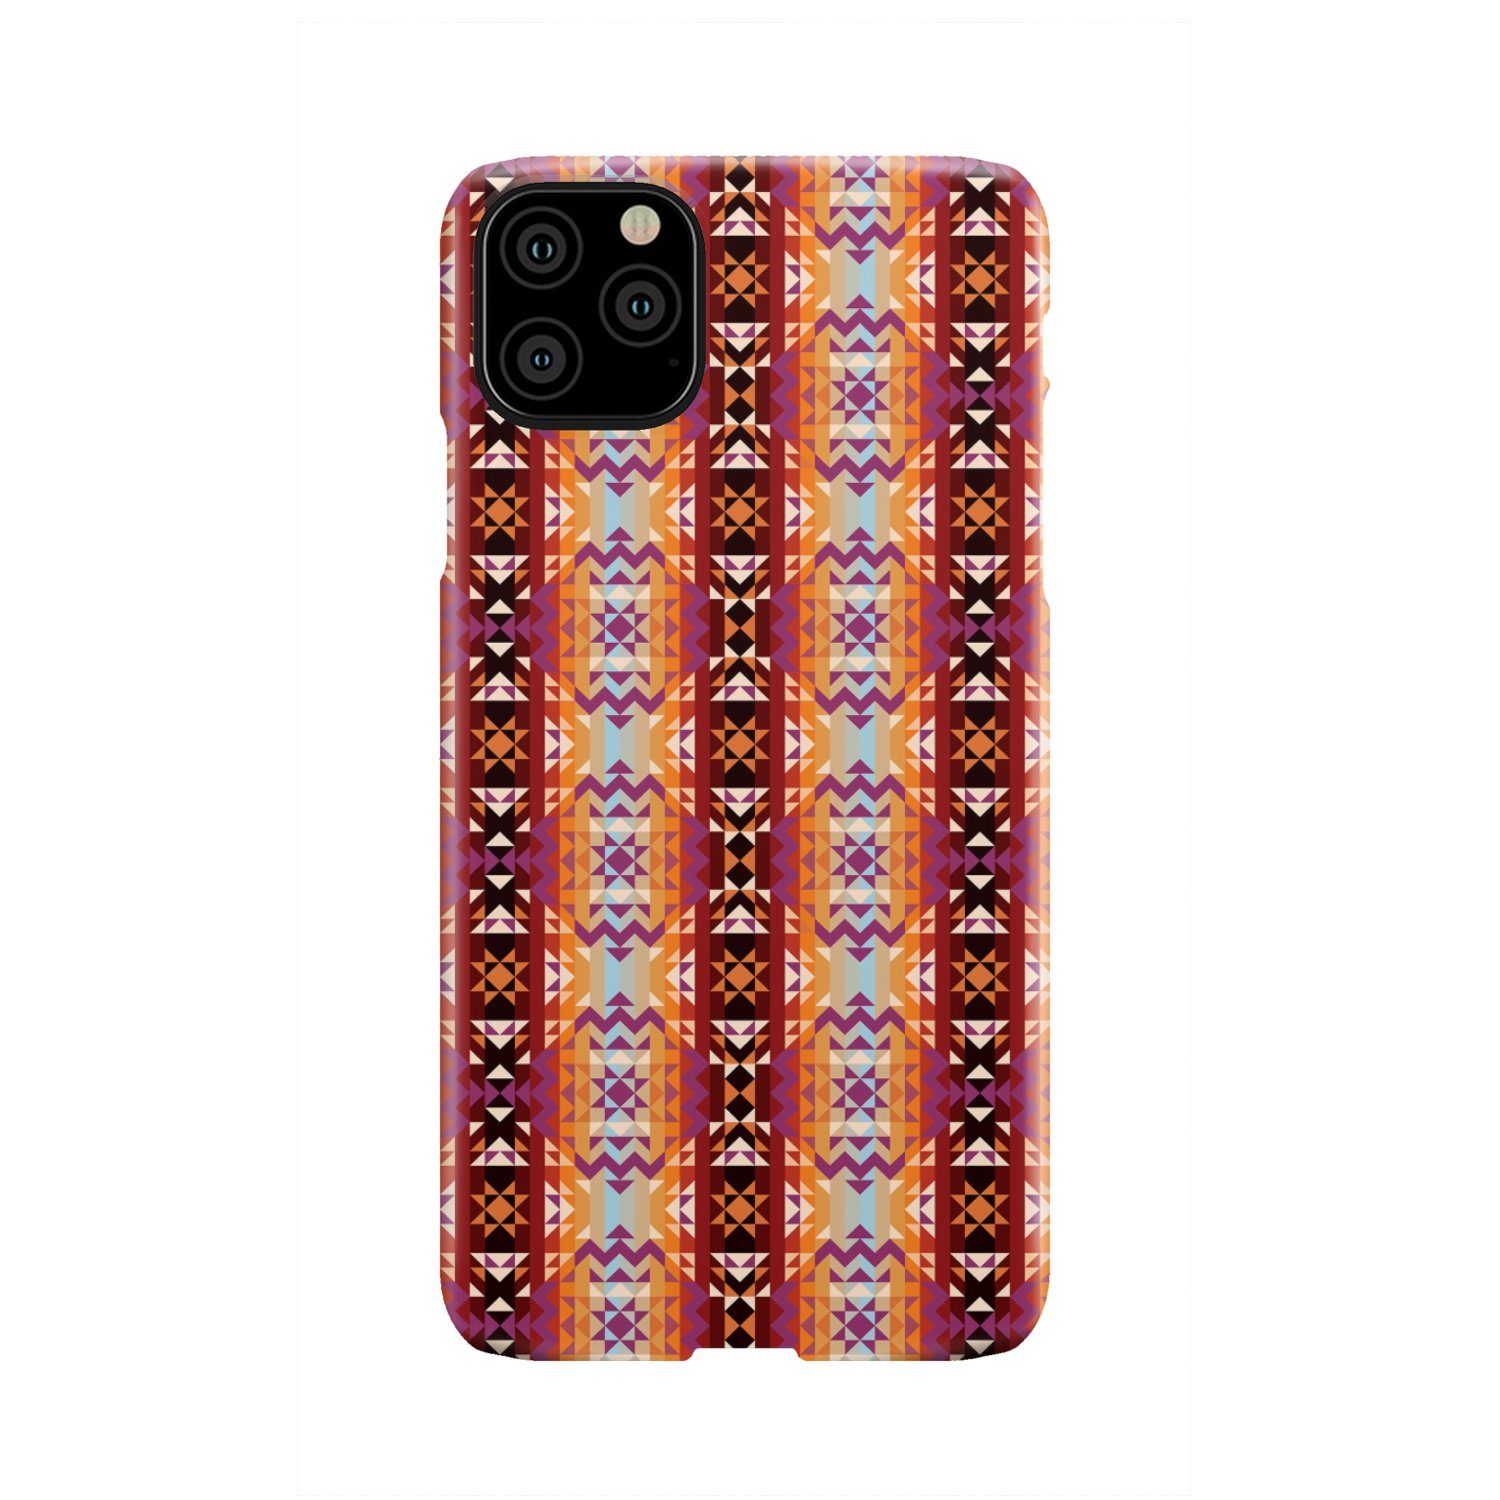 Heatwave Phone Case Phone Case wc-fulfillment iPhone 11 Pro Max 